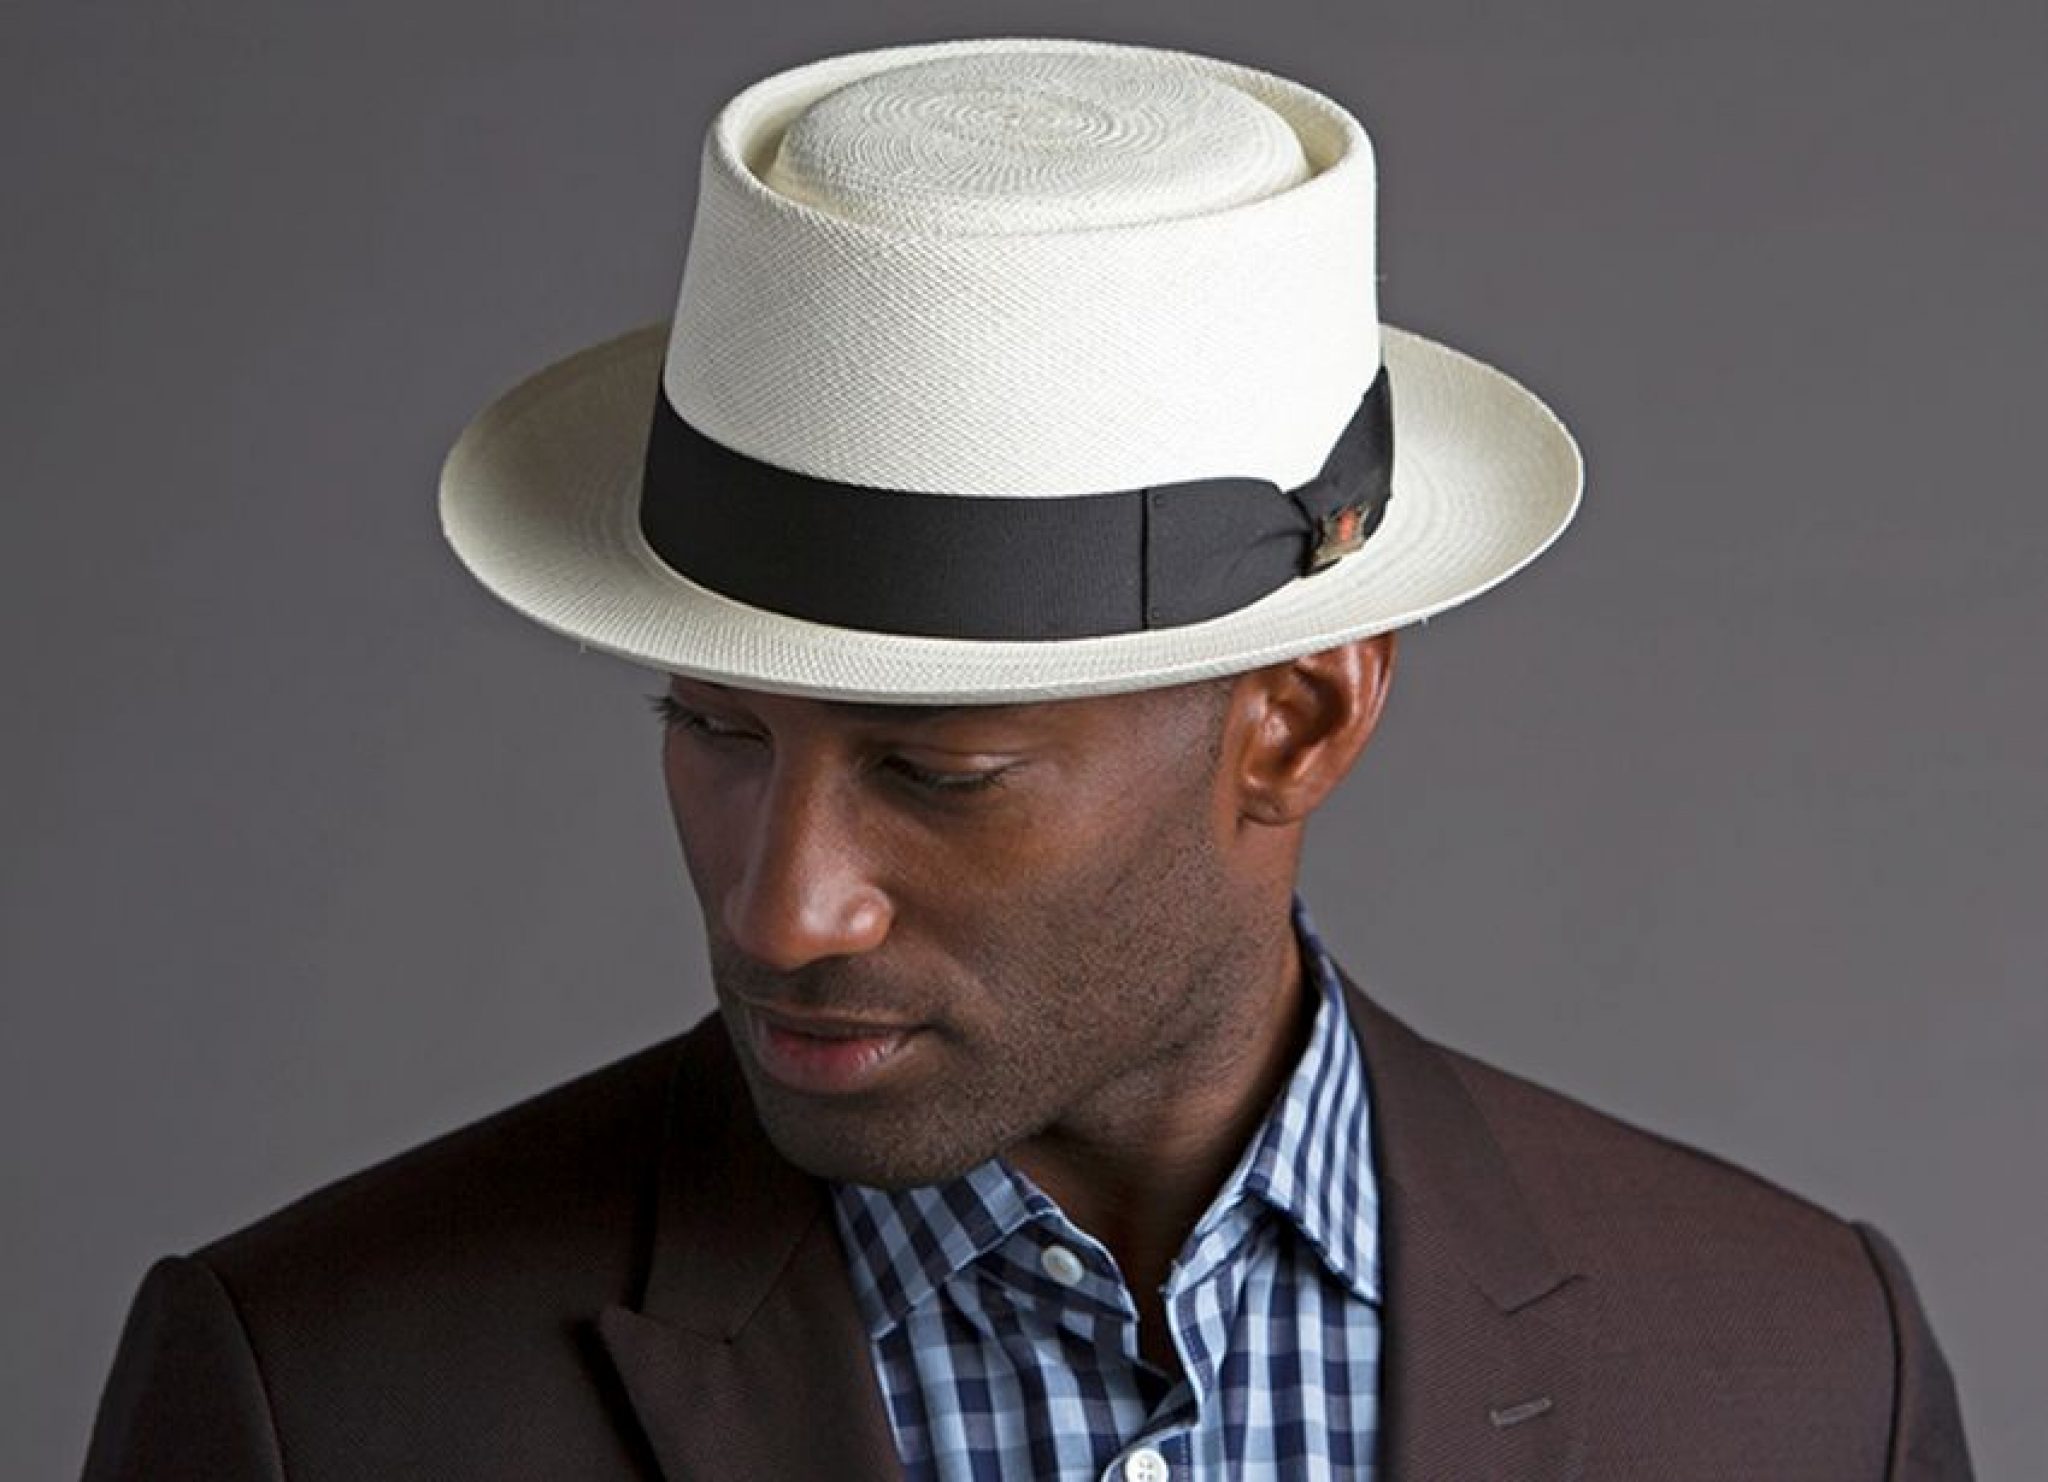 Шляпа директора